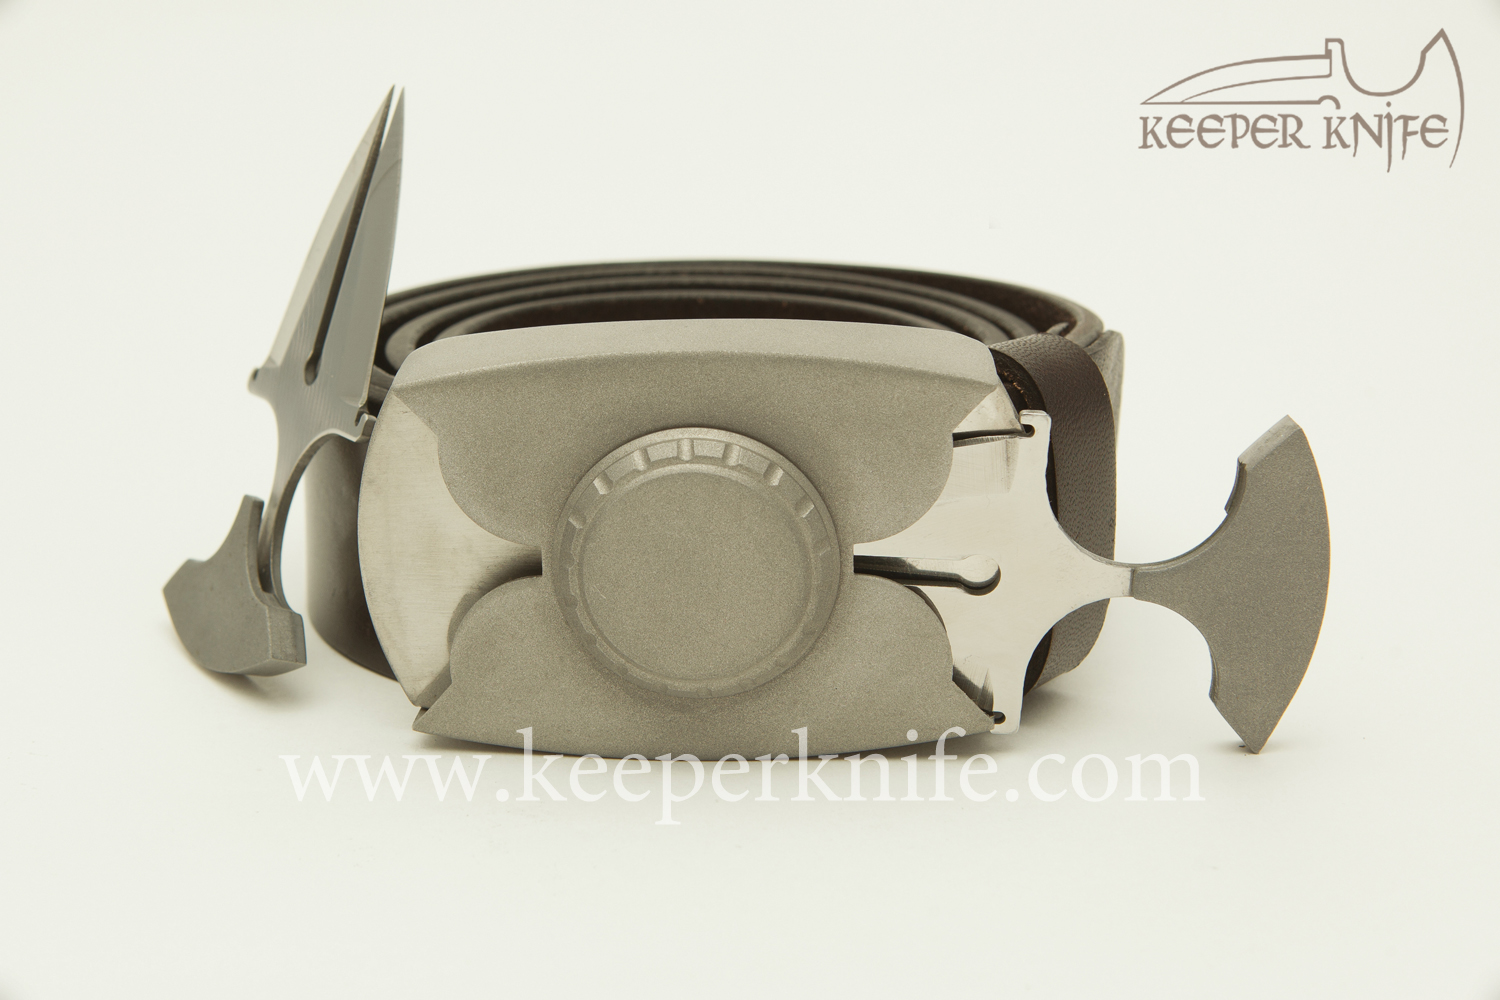 Купить пряжку нож KeeperKnife:  Матовая Пескоструйка